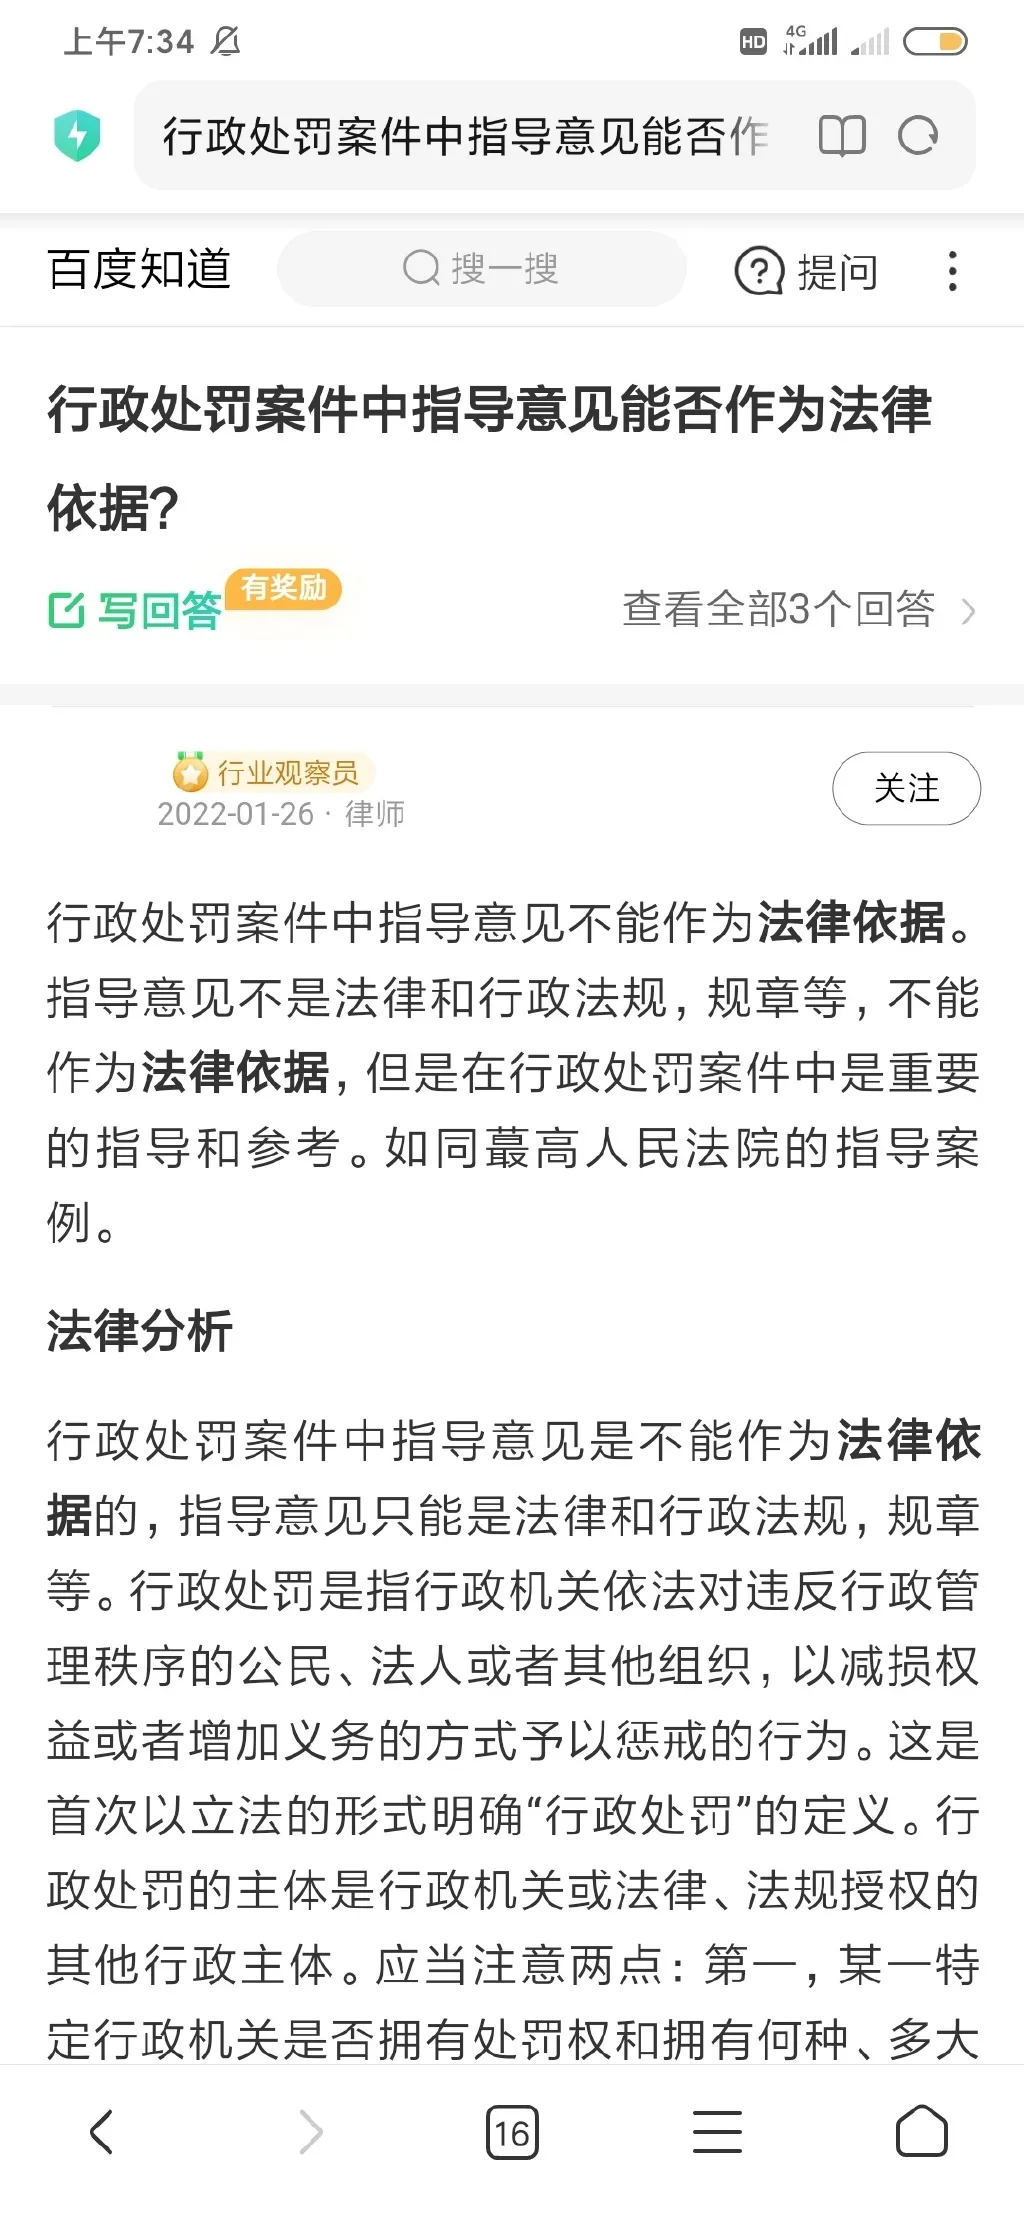 上海全面推行轻微违法行为不予行政处罚   上海市行政处罚 上海市轻微违法行为免罚清单